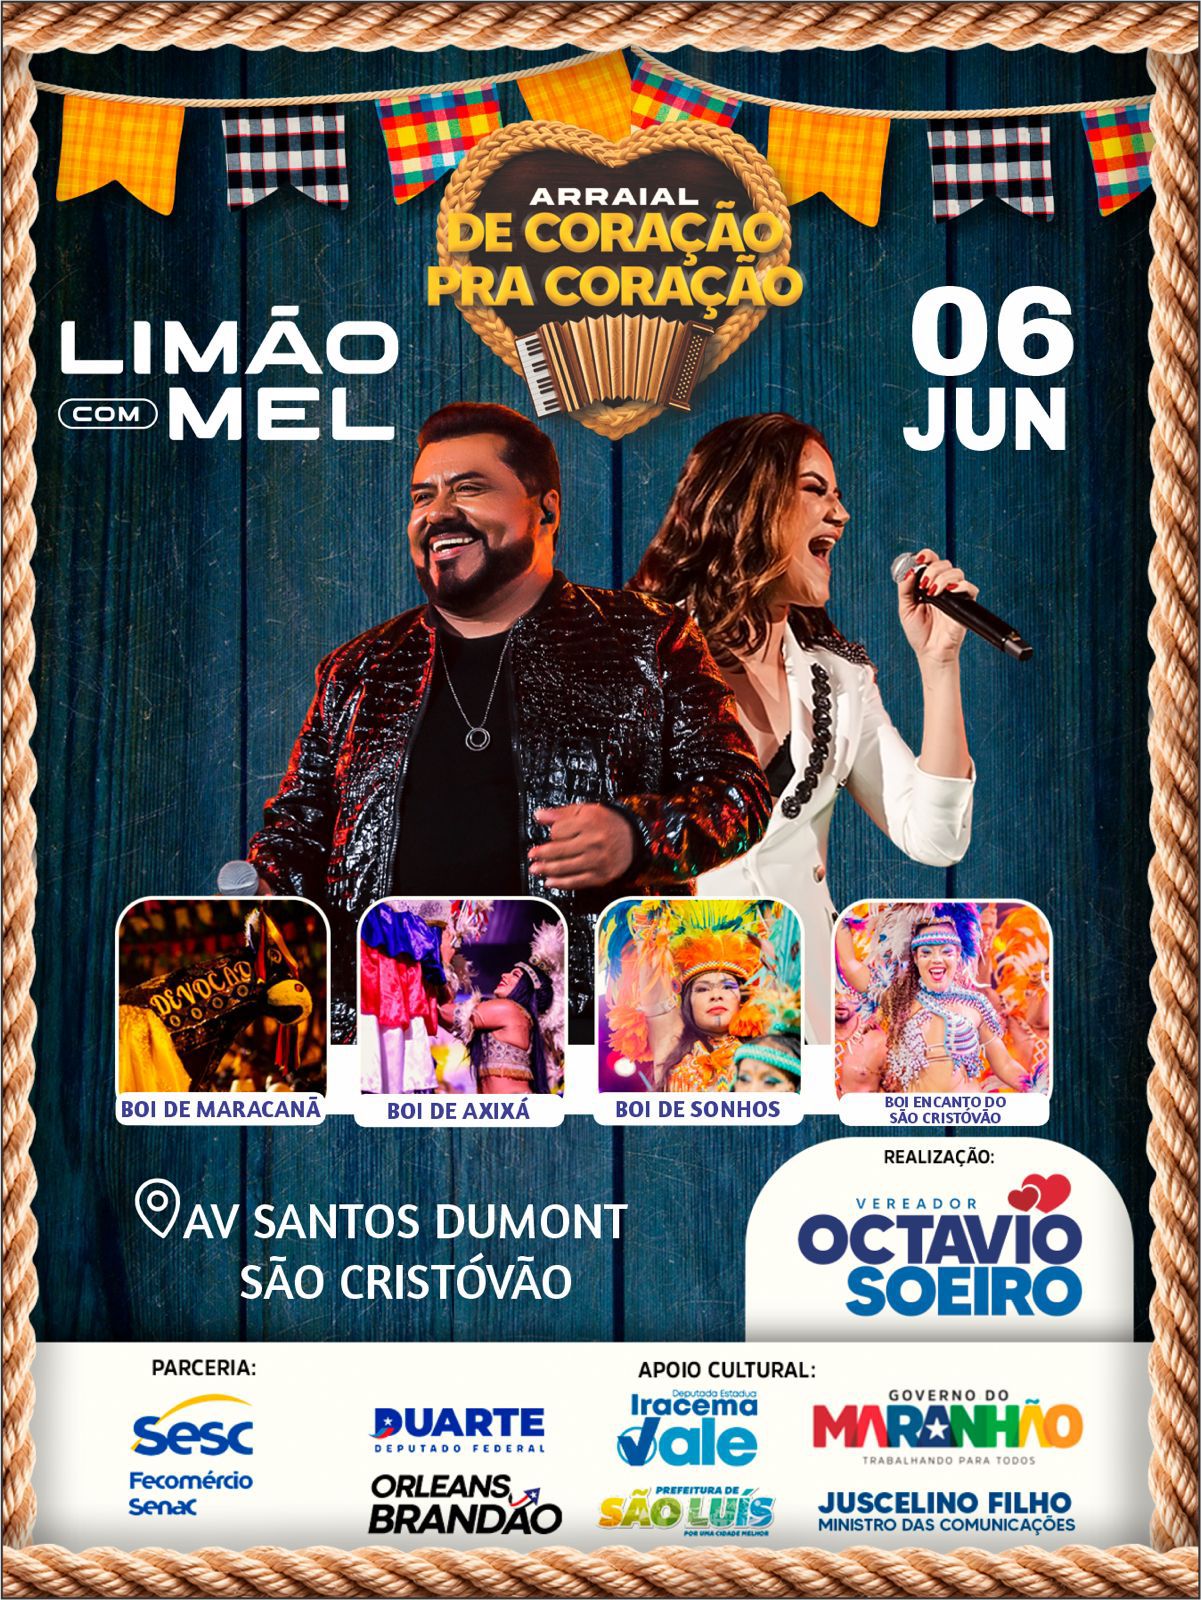 Banda Limão com Mel se apresenta no Arraial do vereador Octavio Soeiro nesta quinta-feira (06)